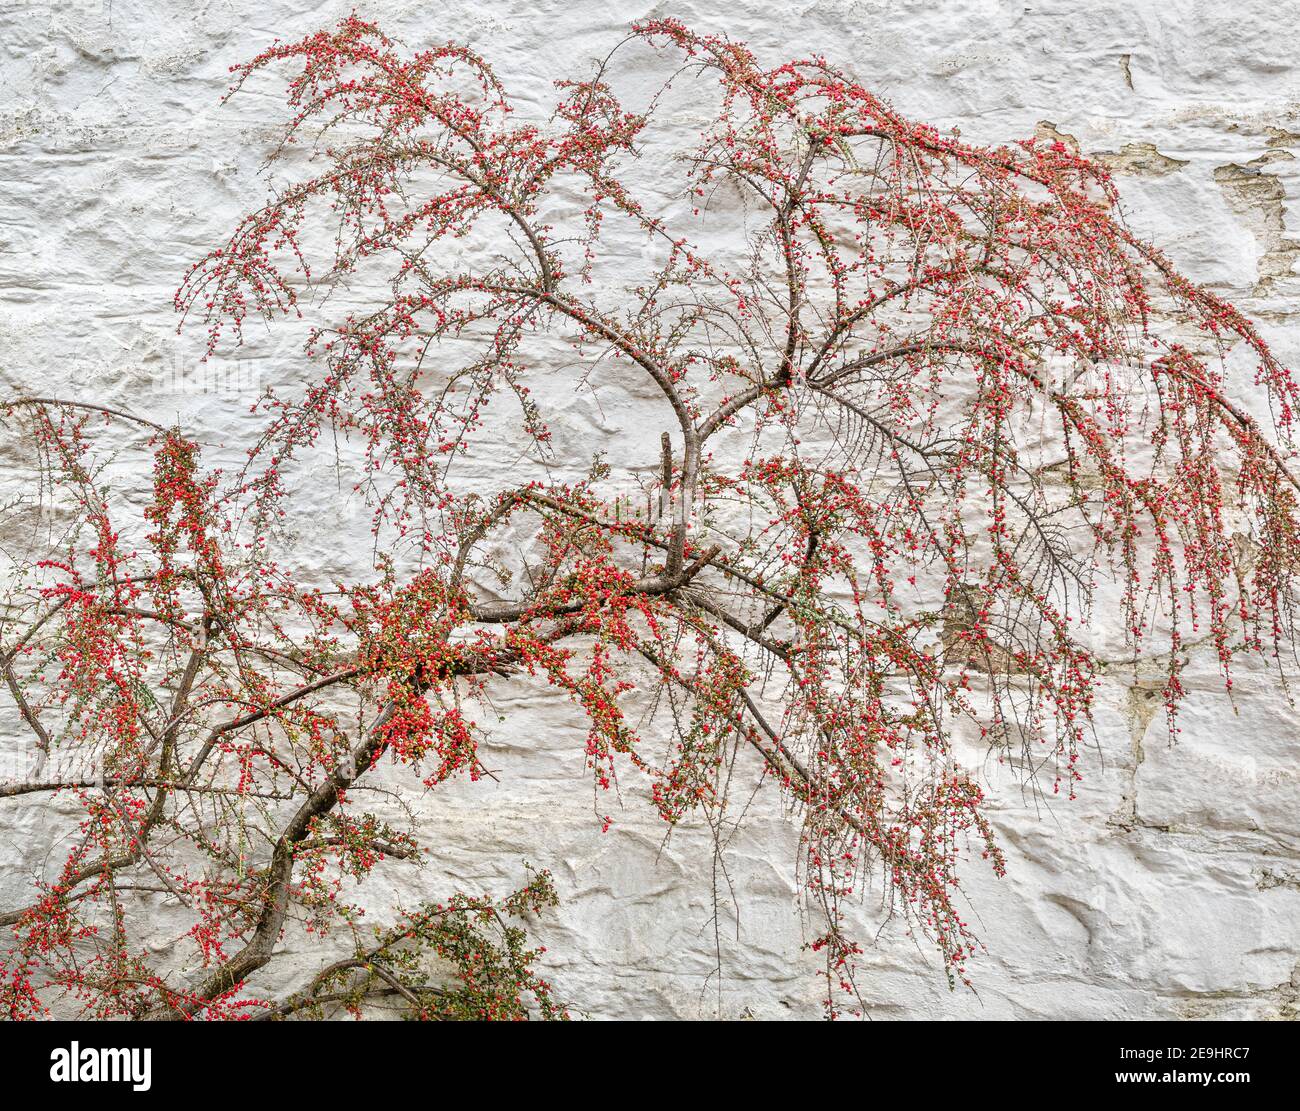 Glencoe, Scotland: Graceful shrub against a white washed stone wall. Stock Photo